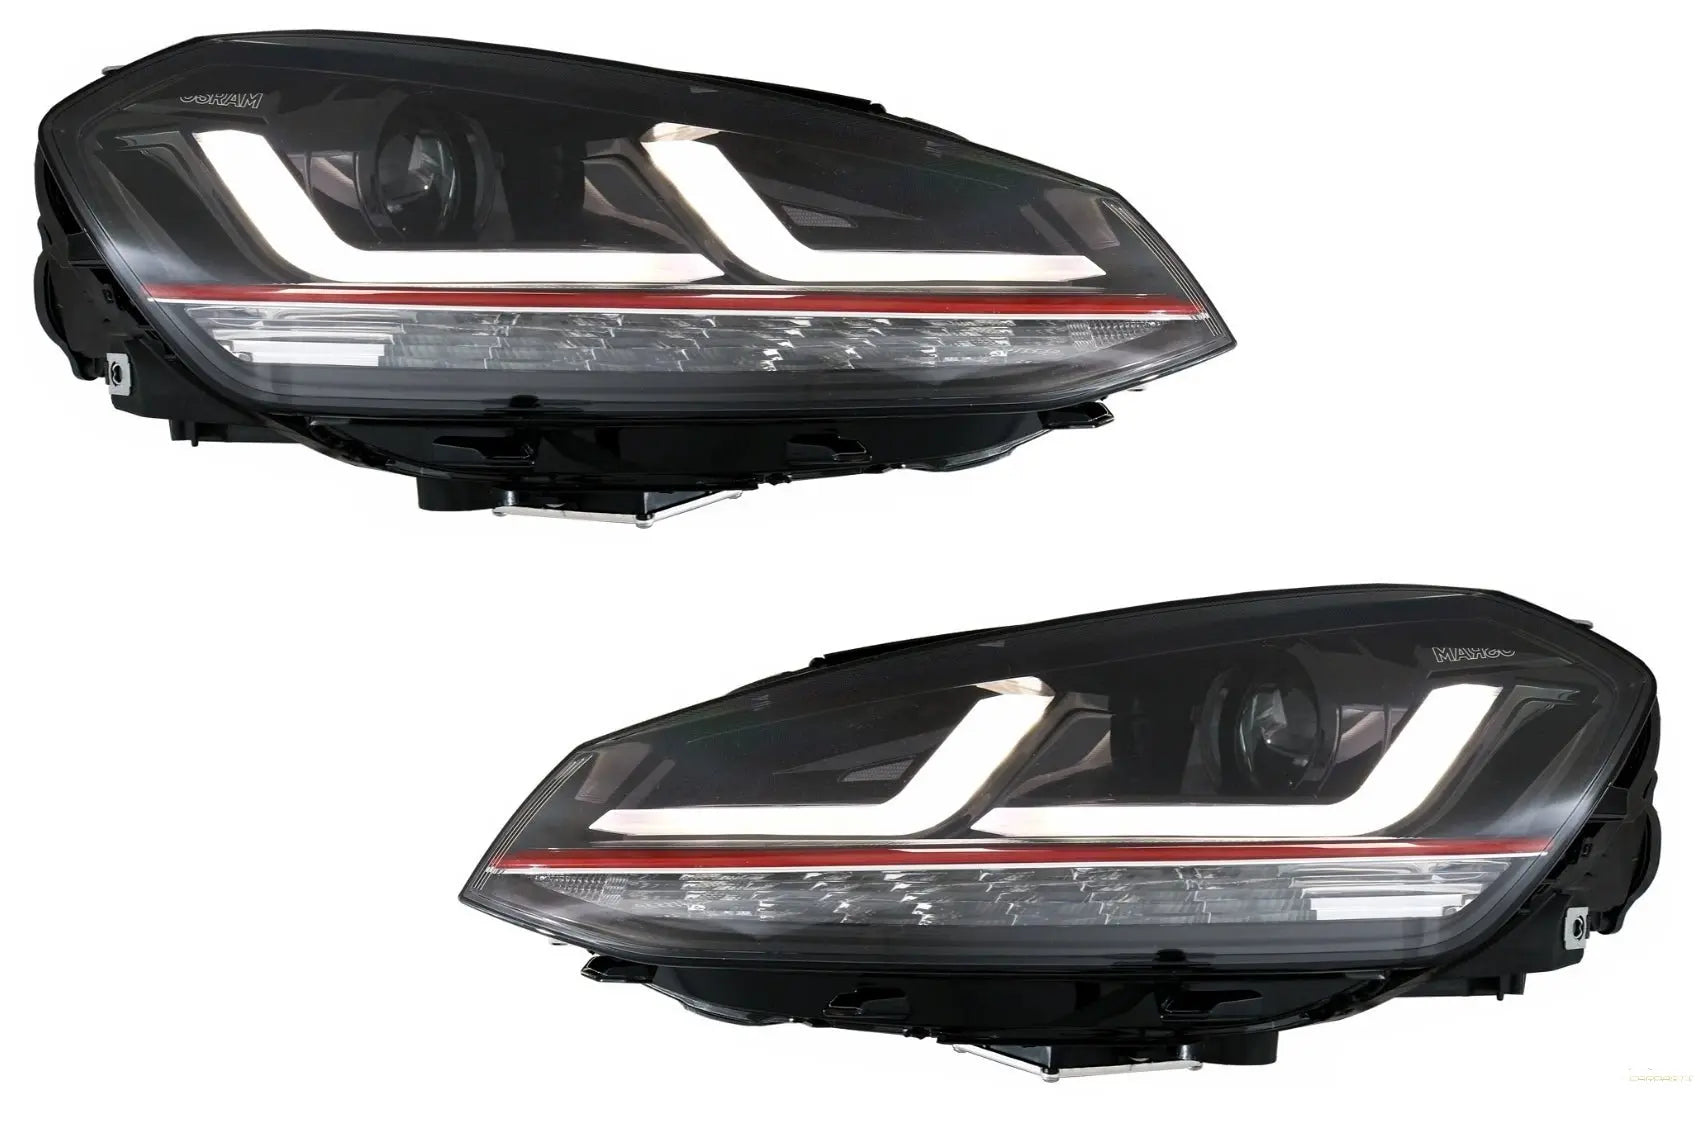 Osram Voll-LED-Scheinwerfer LEDdriving Geeignet Für VW Golf 7 VII 12-17 Rot  GTI Upgrade Für Xenon & Halogen Tagfahrlicht Autos - headlights - 1218.00 -  CarPartsTuning